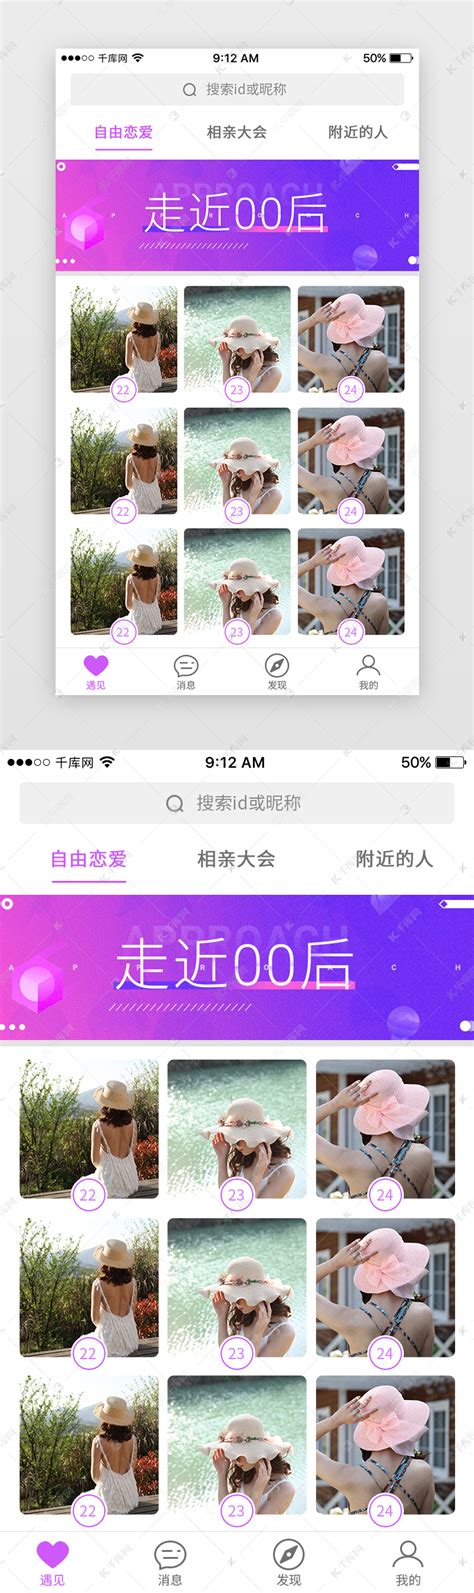 紫色婚恋交友App首页ui界面设计素材-千库网